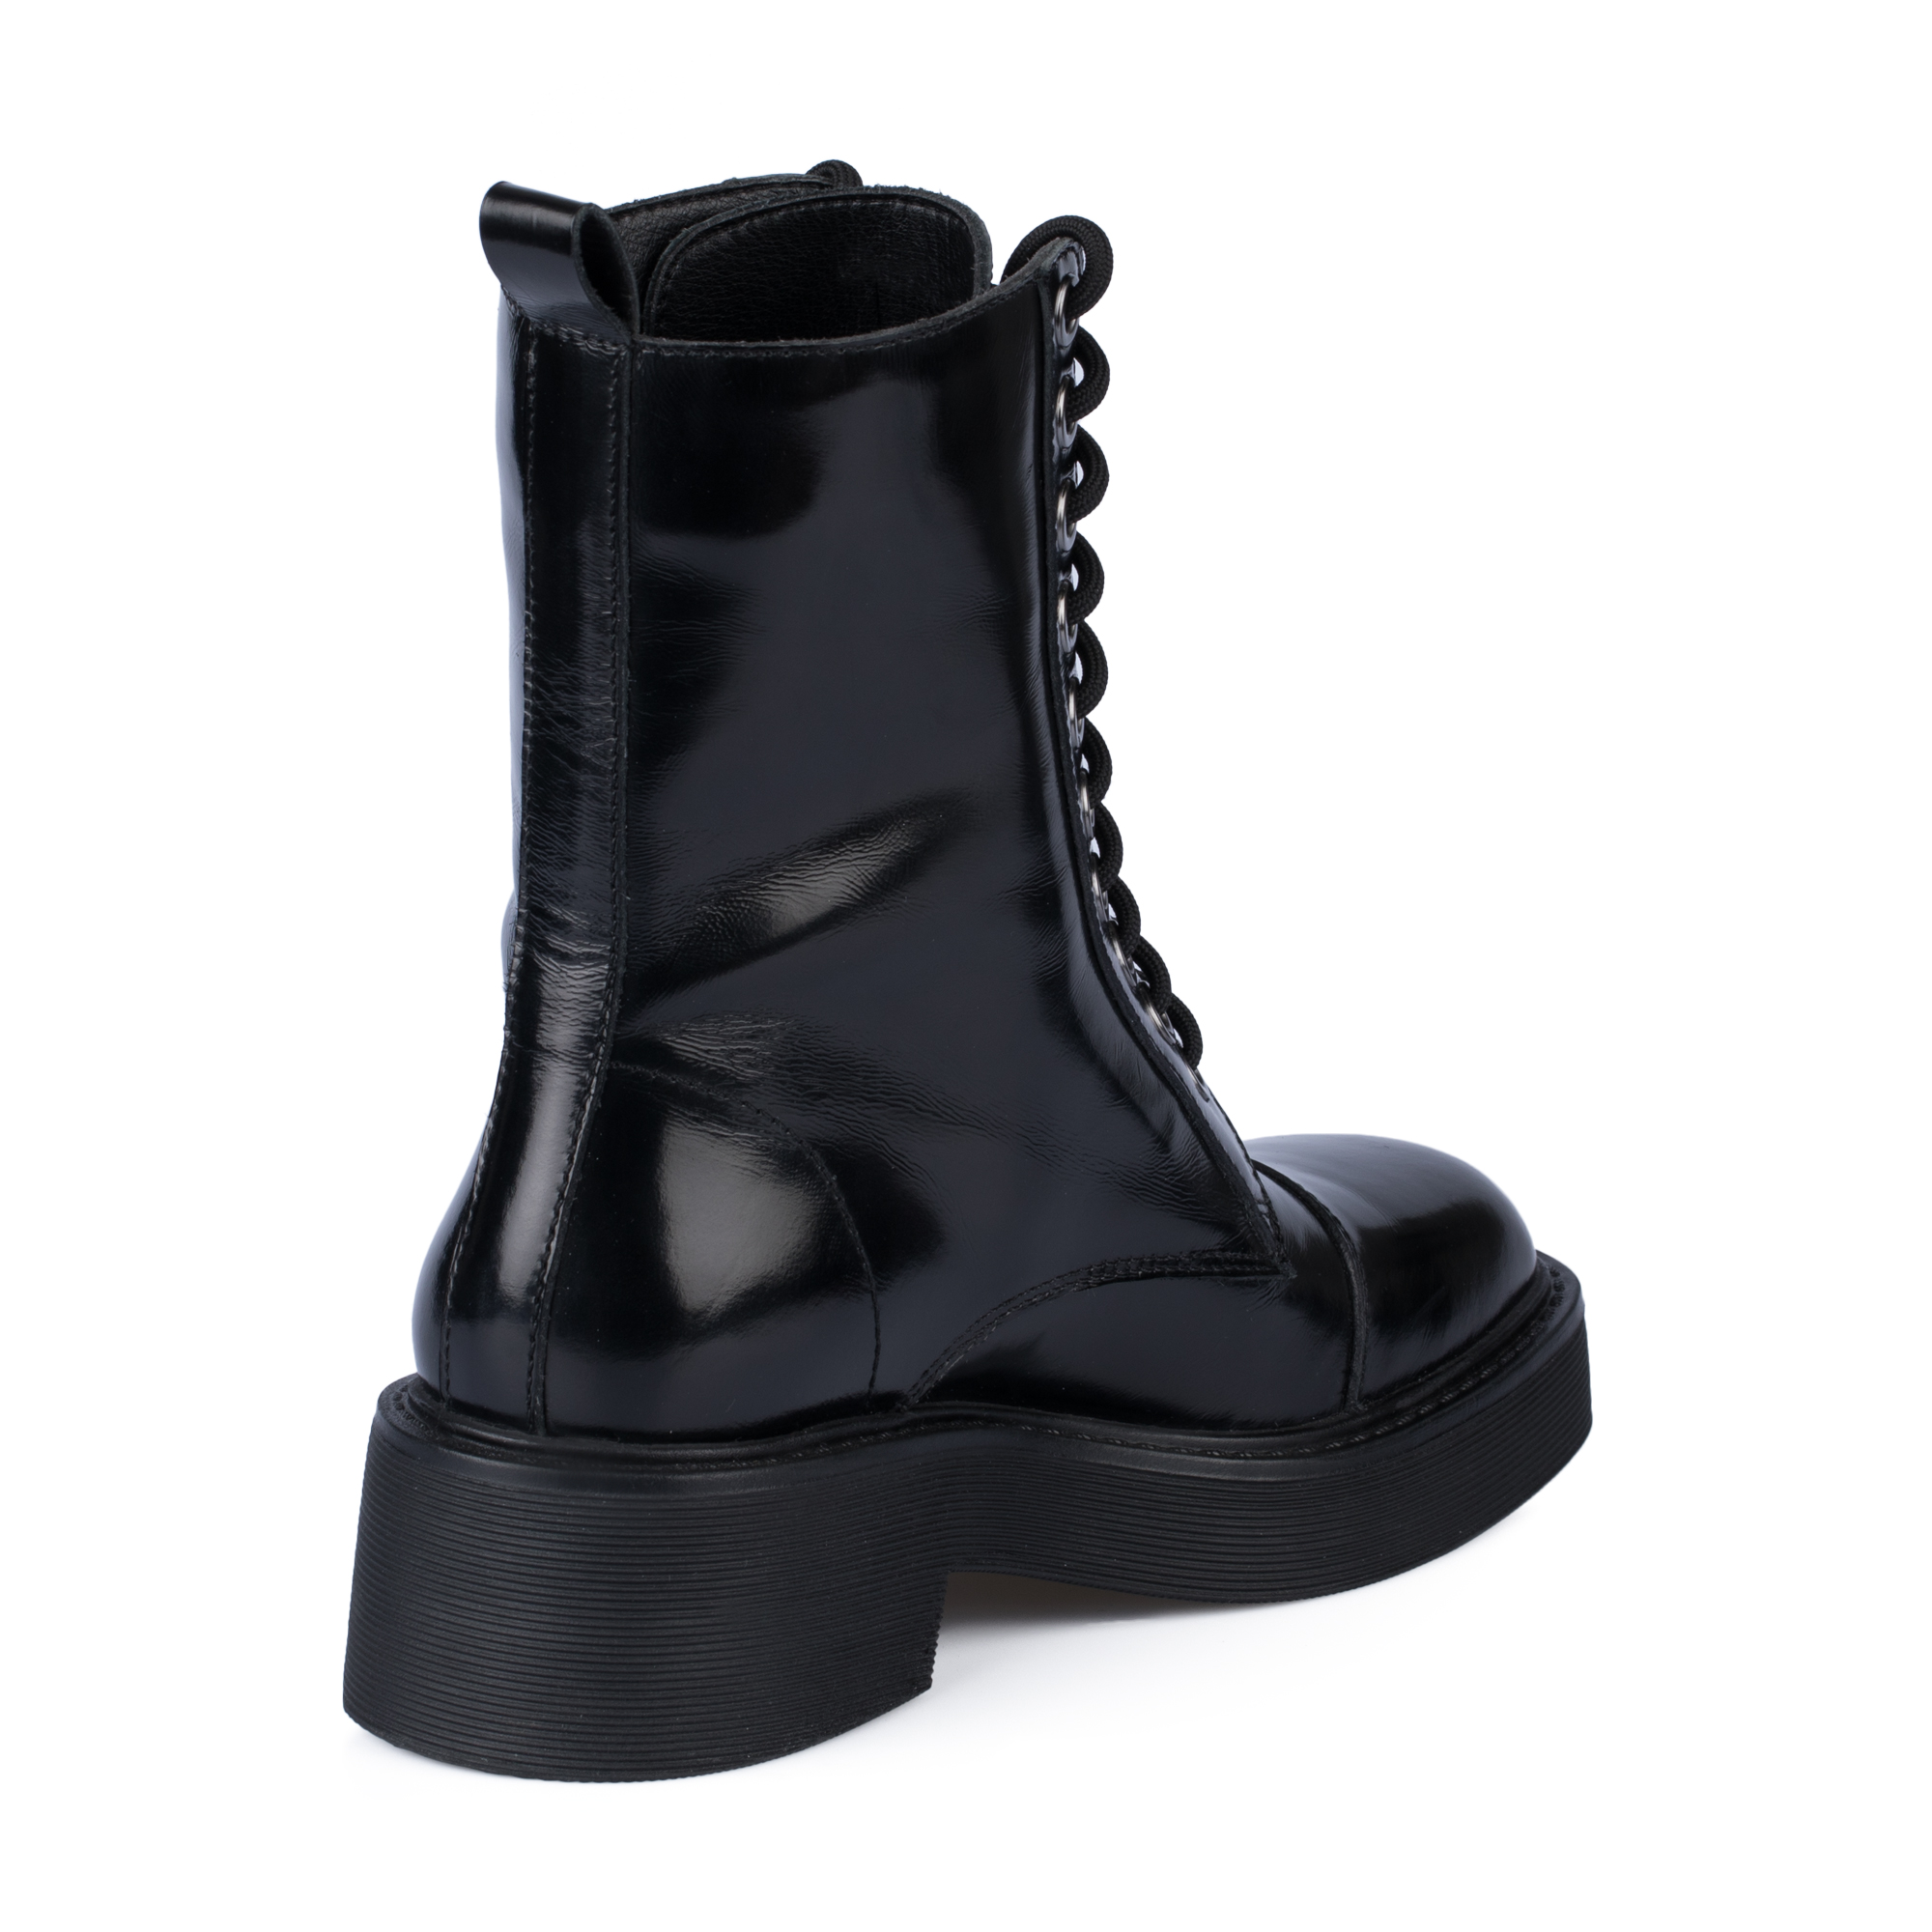 Ботинки Thomas Munz 126-400A-2102, цвет черный, размер 36 - фото 3